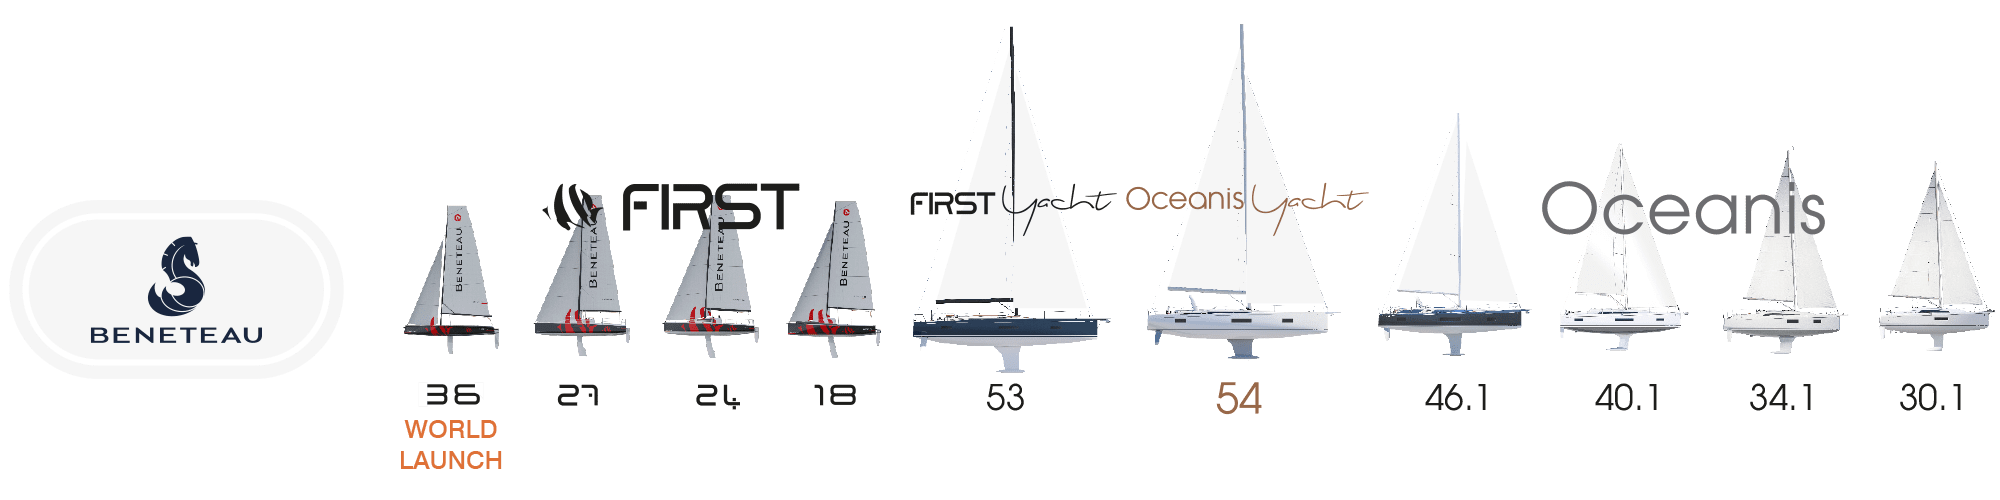 dusseldorf-boat-show-beneteau-sail